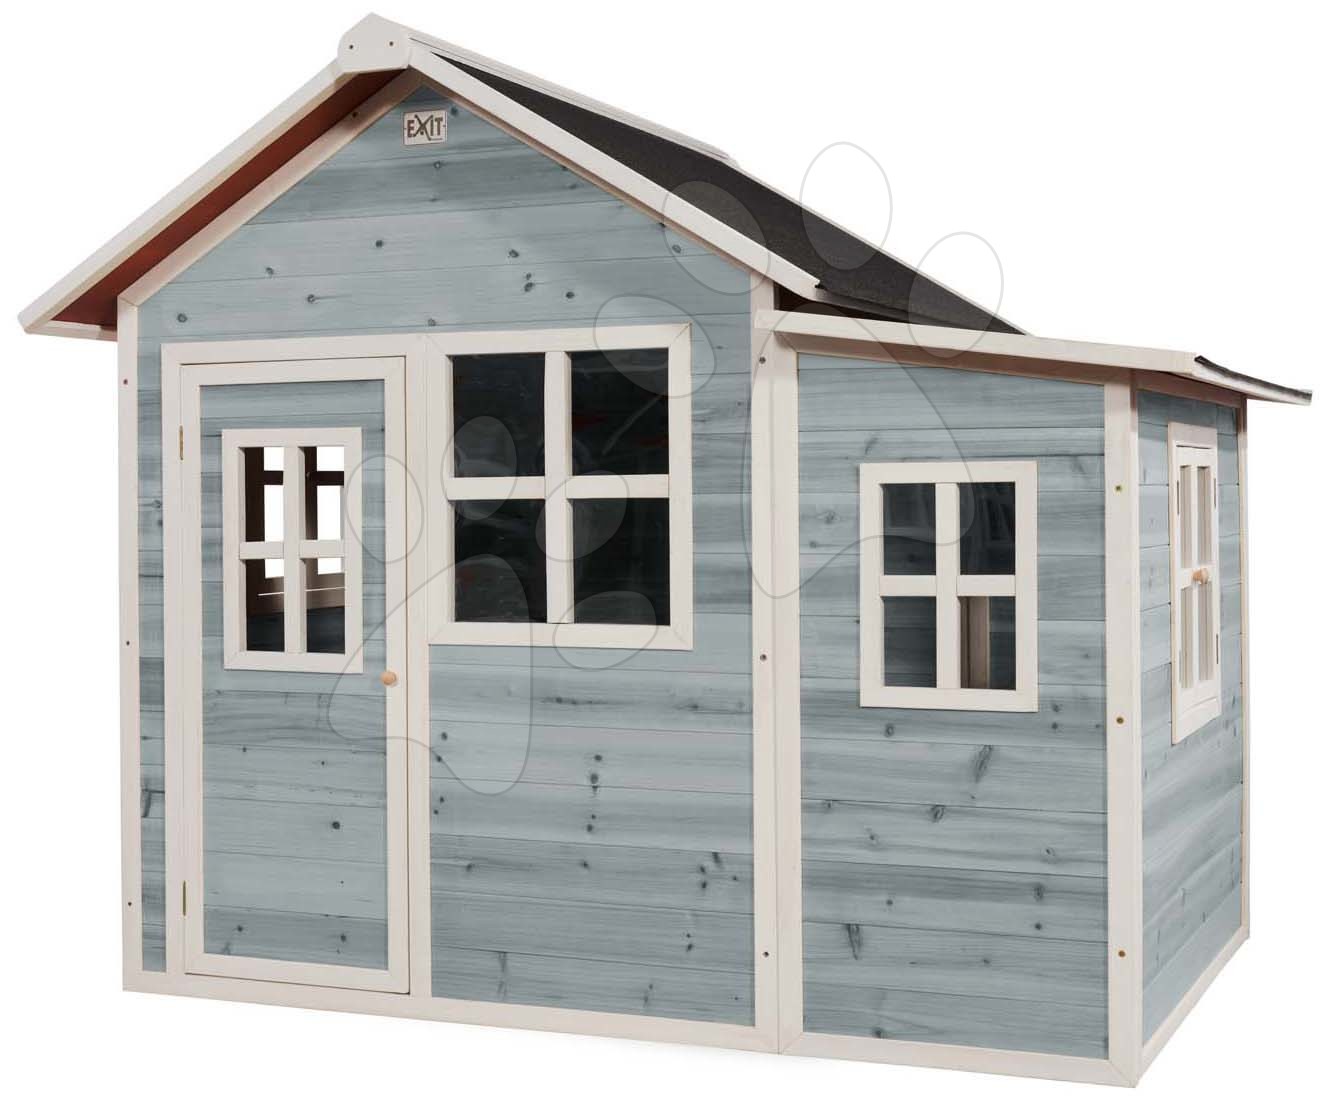 Domček cédrový Loft 150 Blue Exit Toys veľký s vodeodolnou strechou modrý